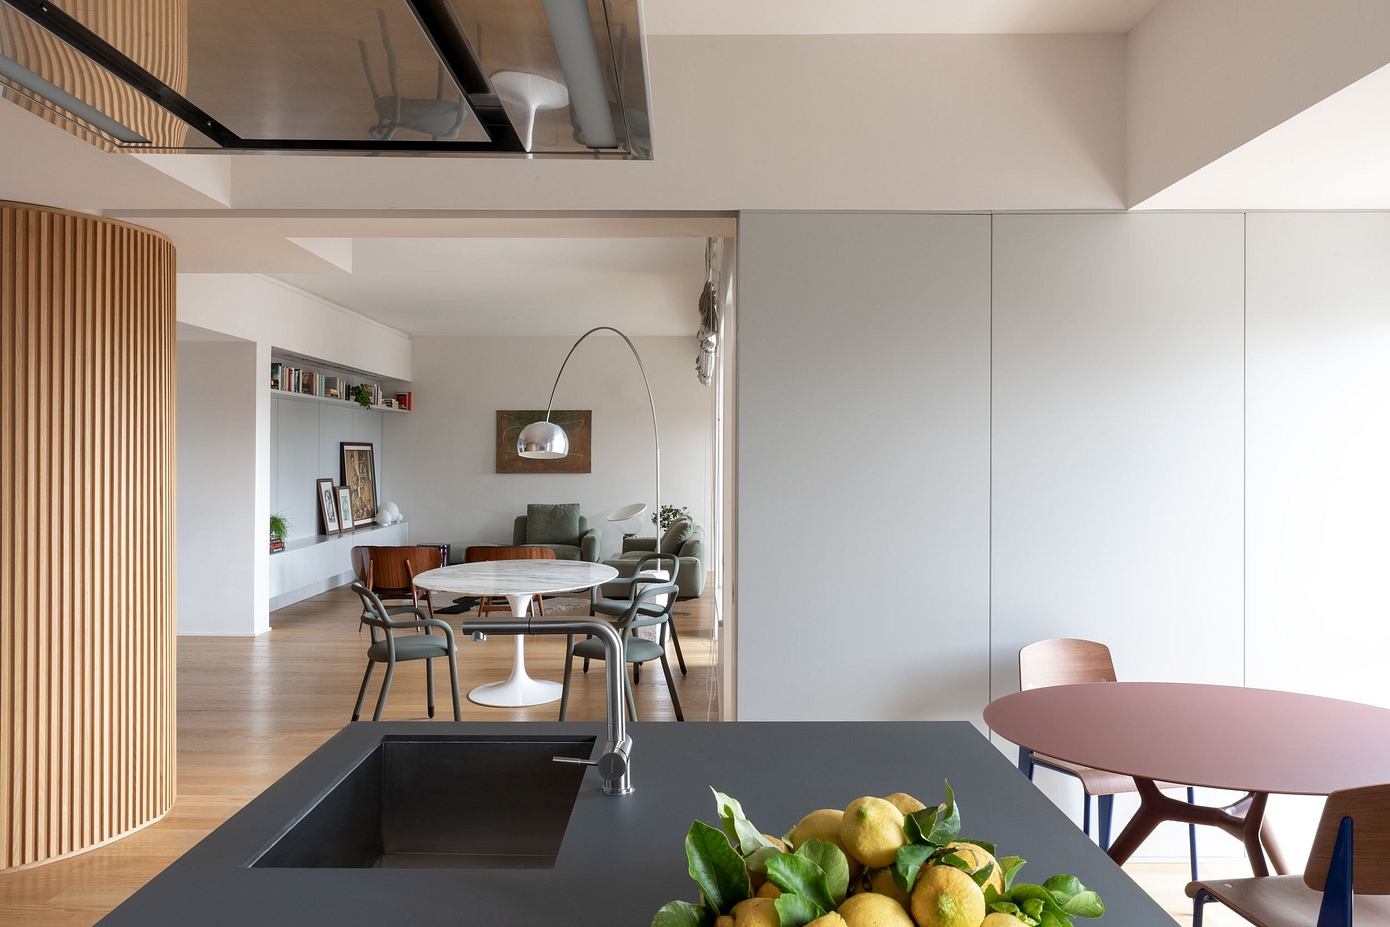 Casa Isola: Punto Zero’s Multifunctional Apartment Design